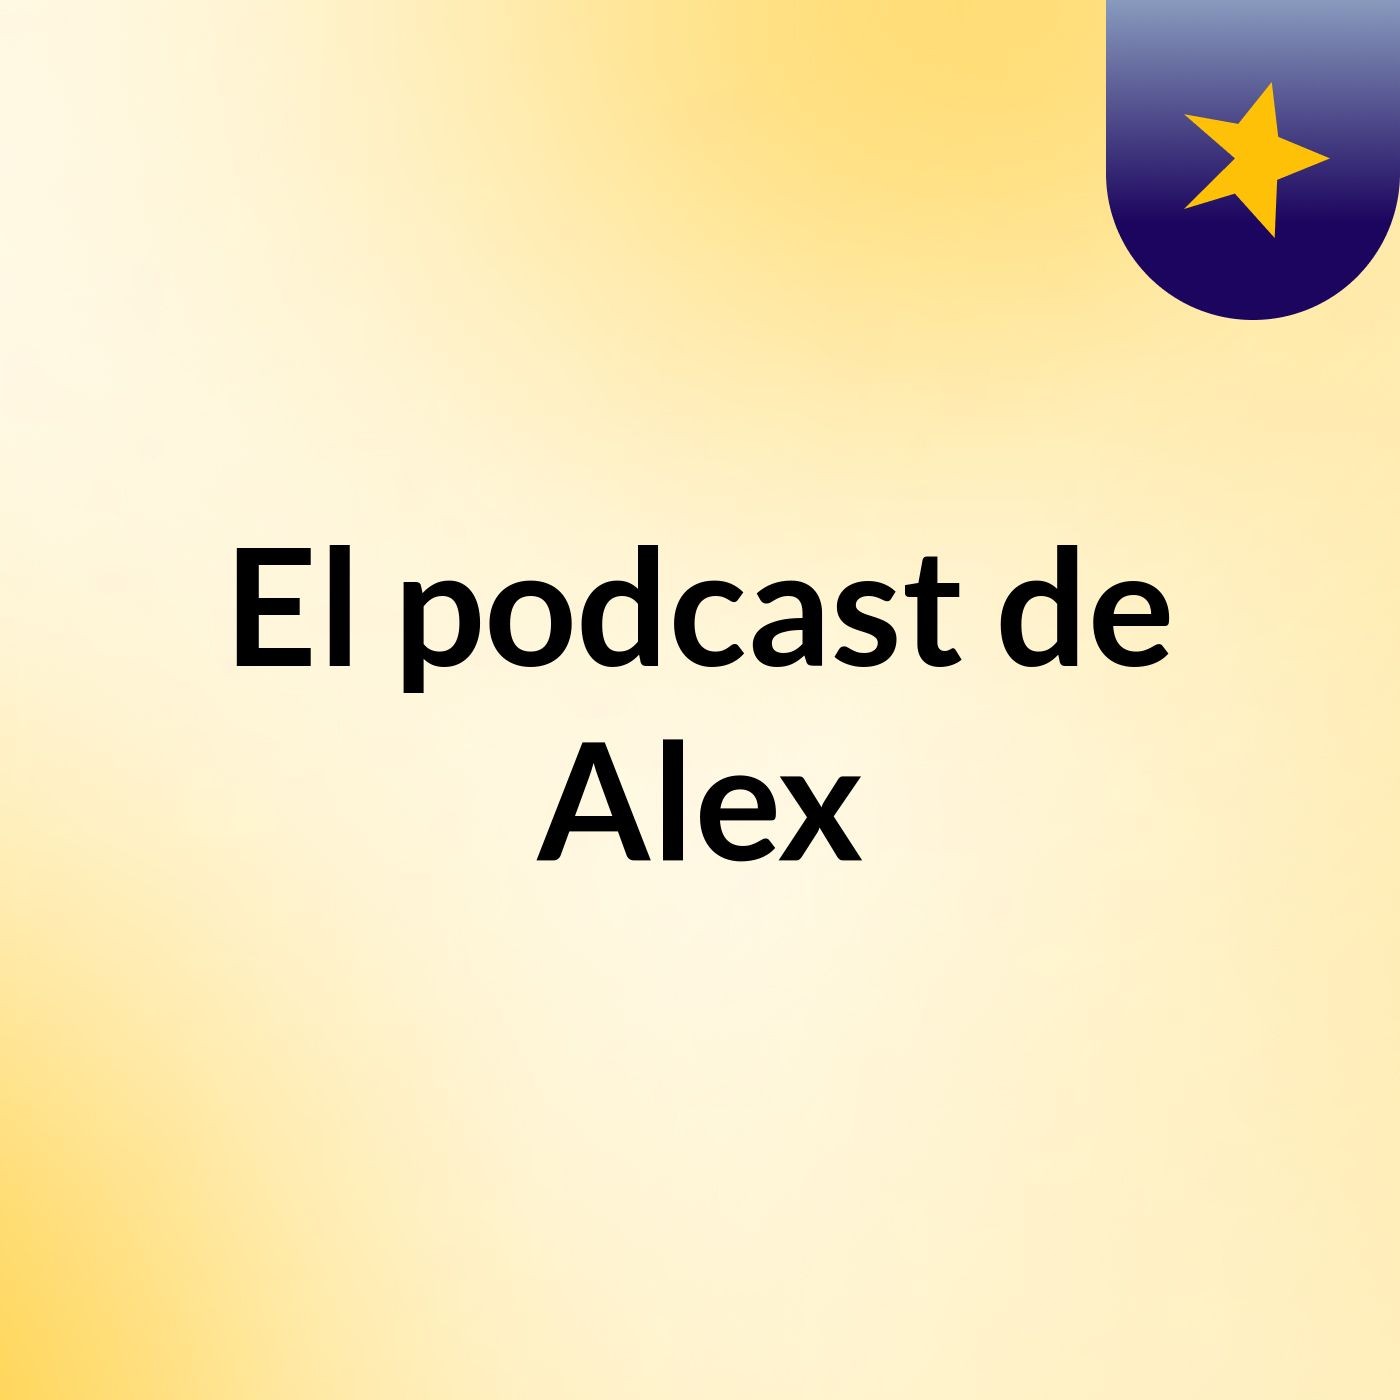 El podcast de Alex